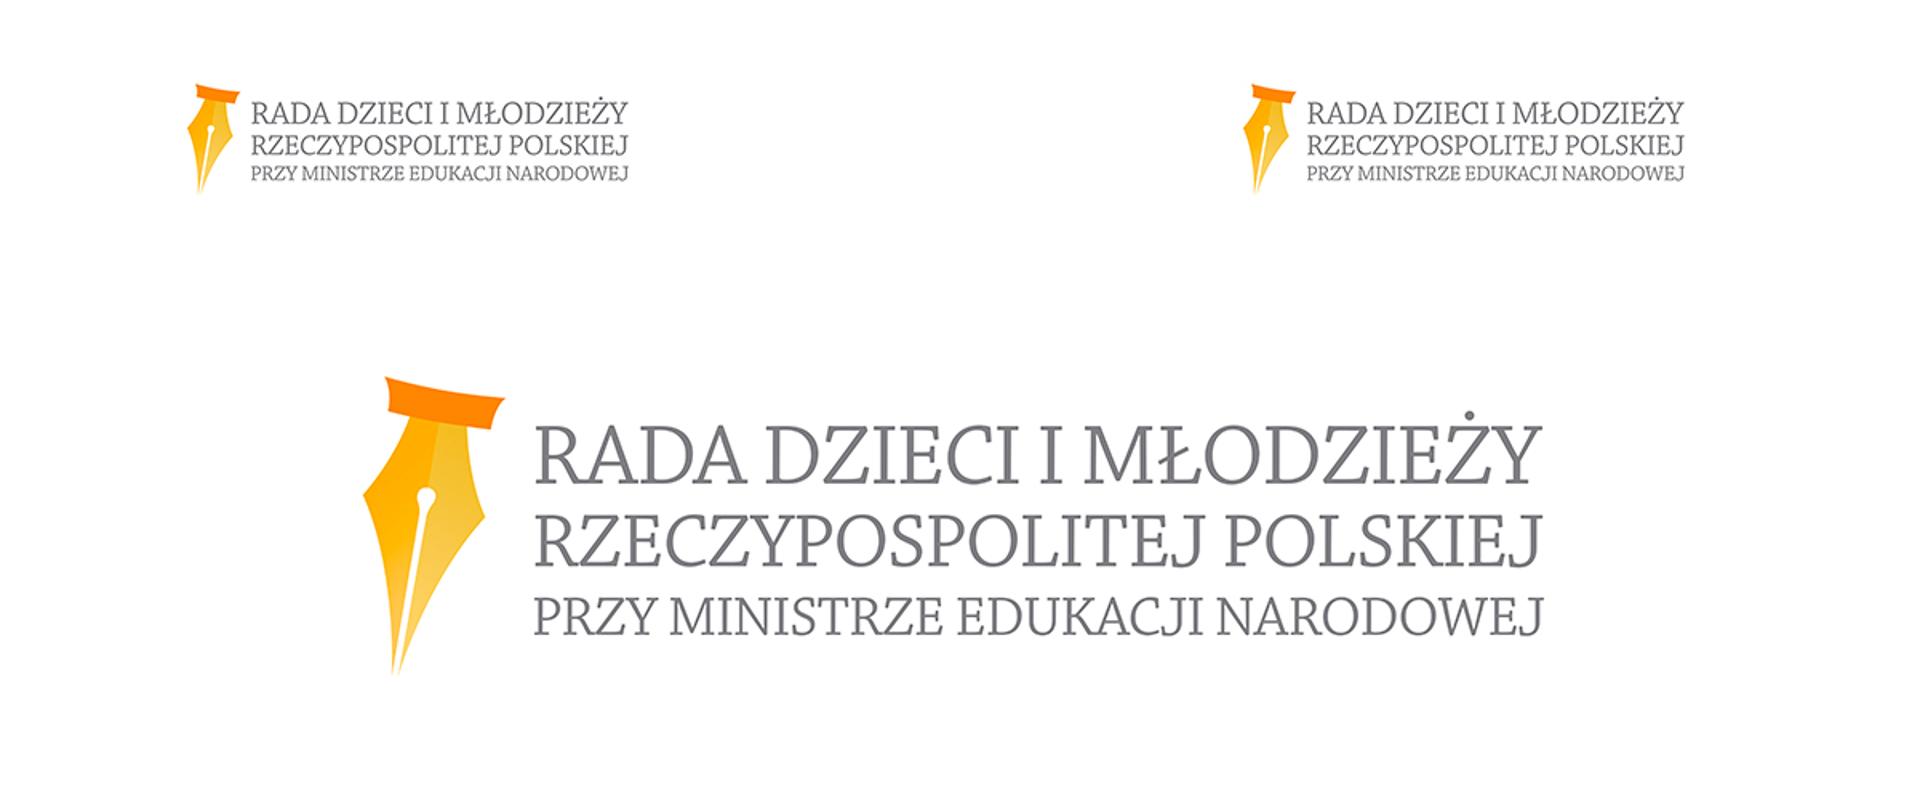 III kadencja Rady Dzieci i Młodzieży Rzeczypospolitej Polskiej przy Ministrze Edukacji Narodowej